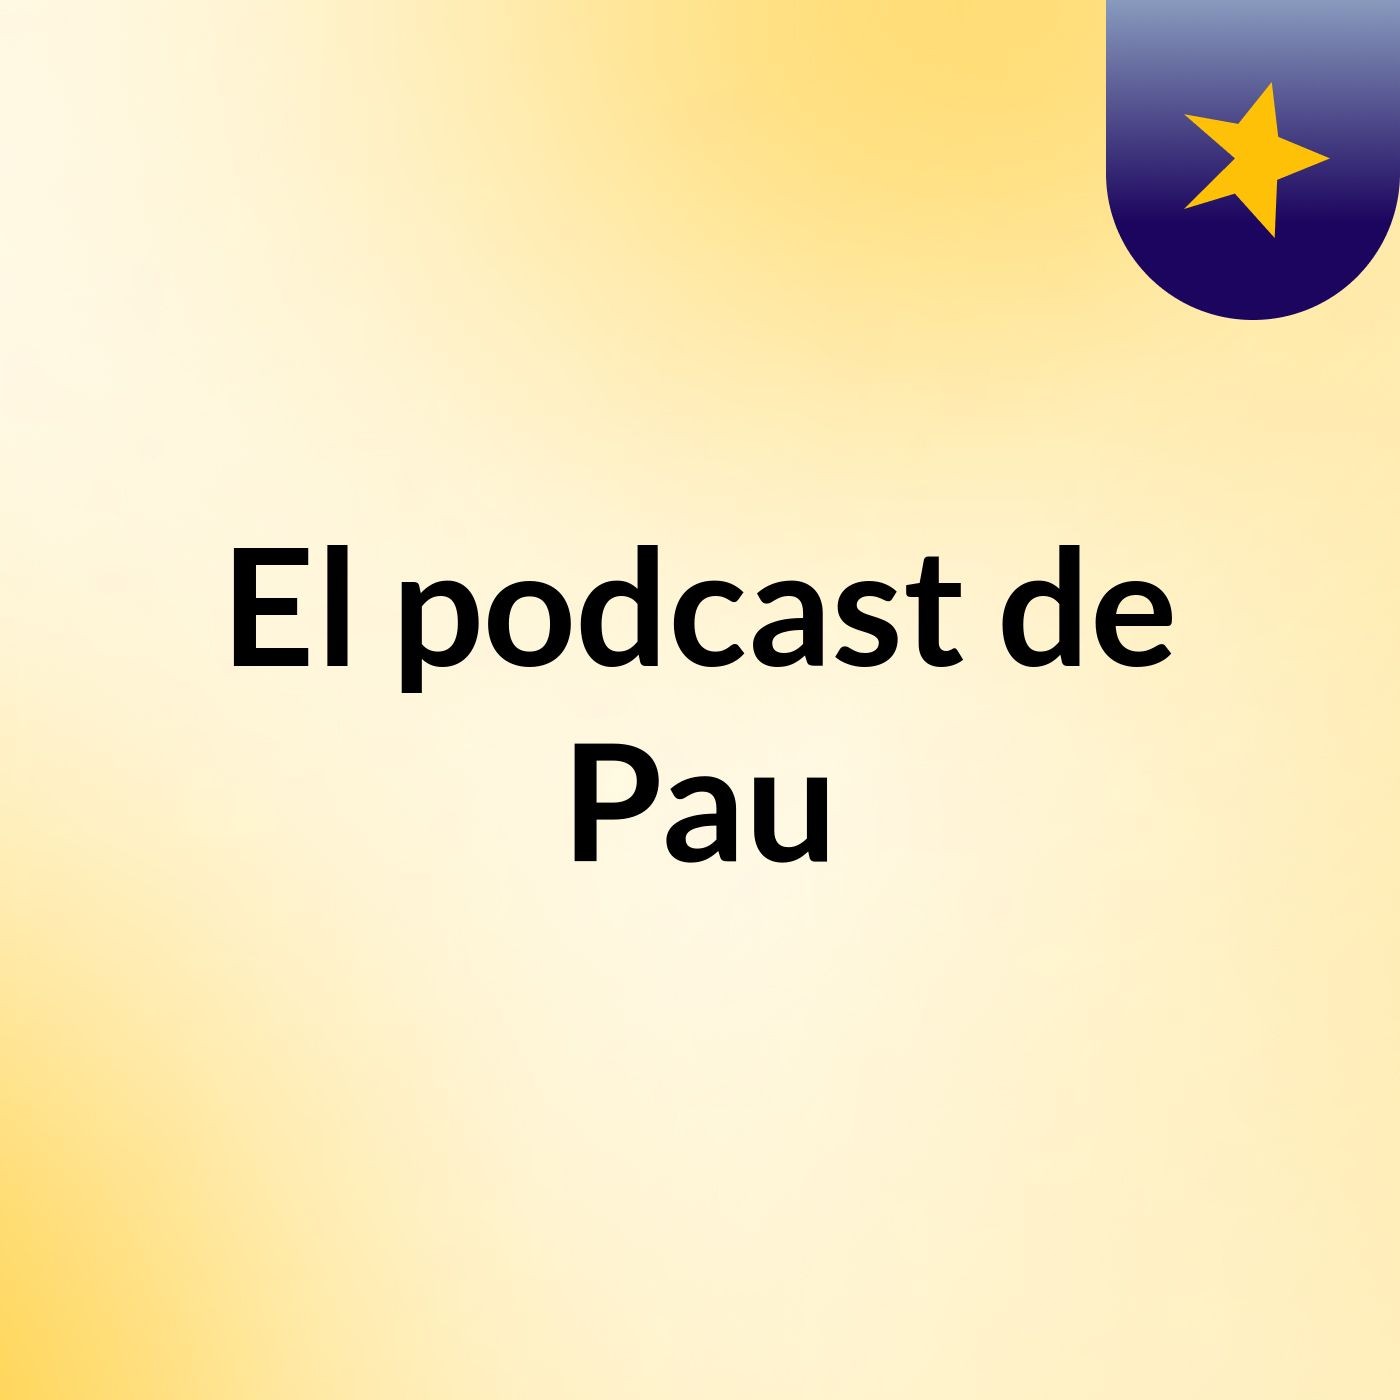 El podcast de Pau